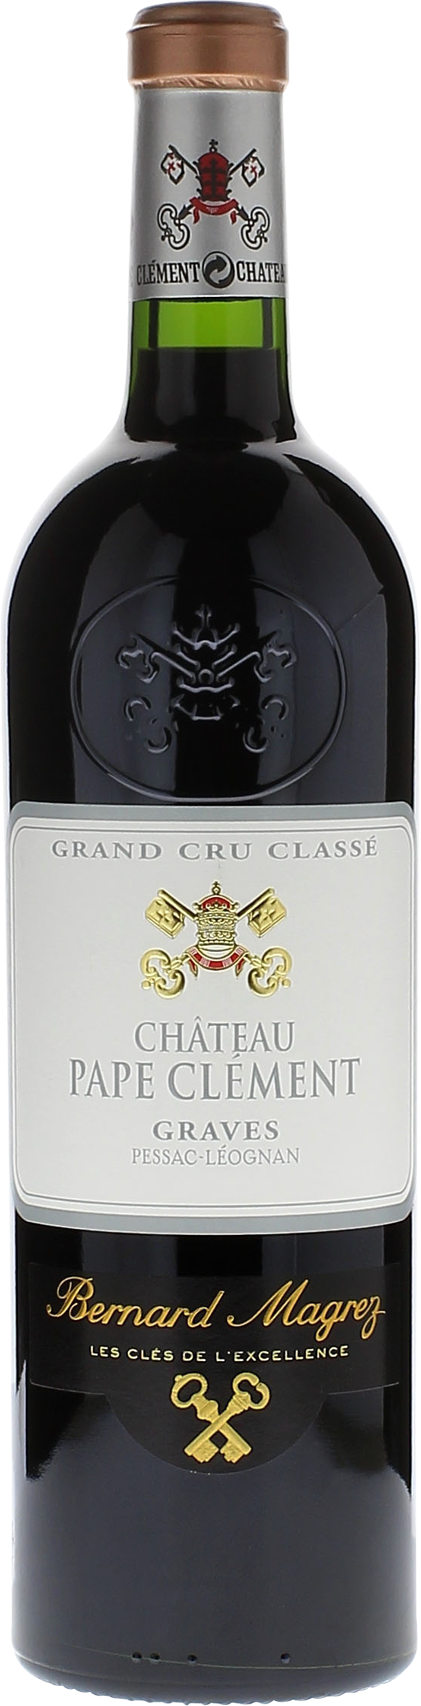 Pape clement rouge 2020 Grand Cru Class Pessac-Lognan, Bordeaux rouge